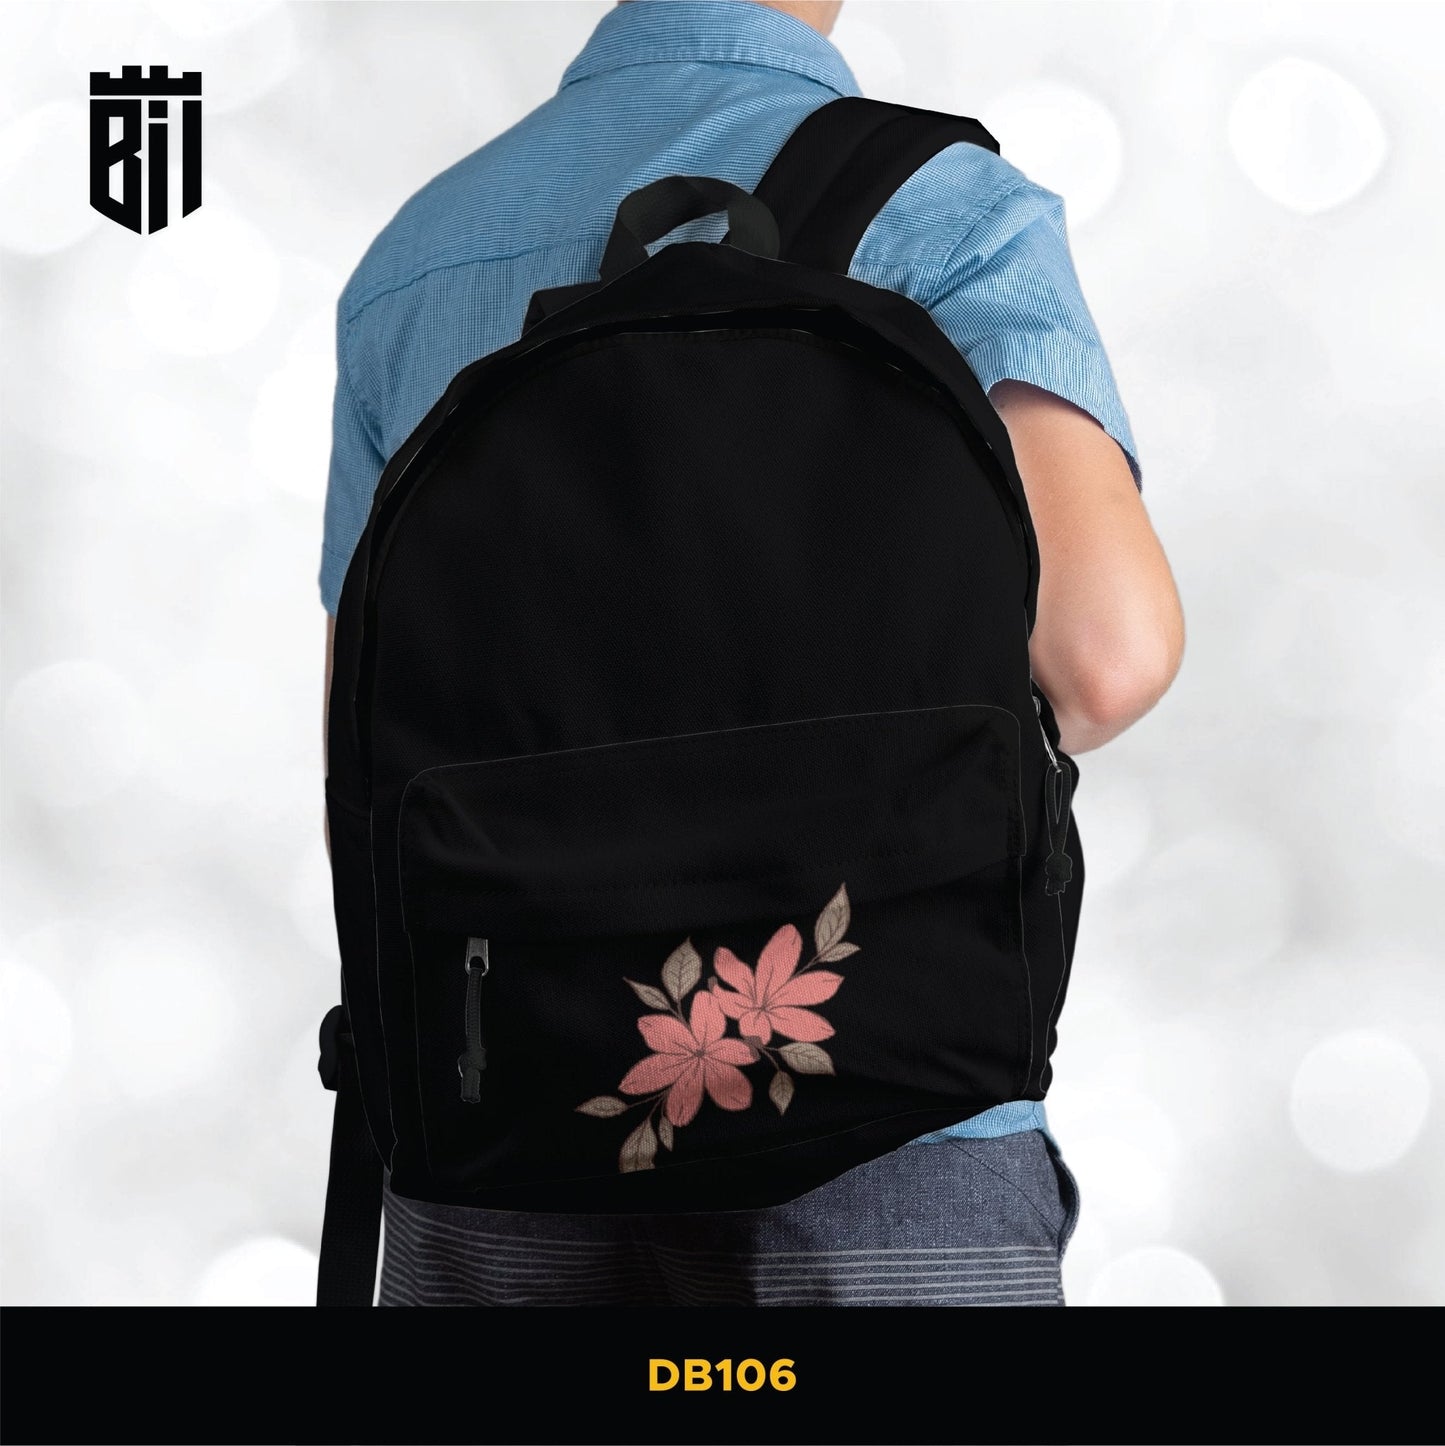 DB106 Black Flower Pocket Allover Printed Backpack - BREACHIT